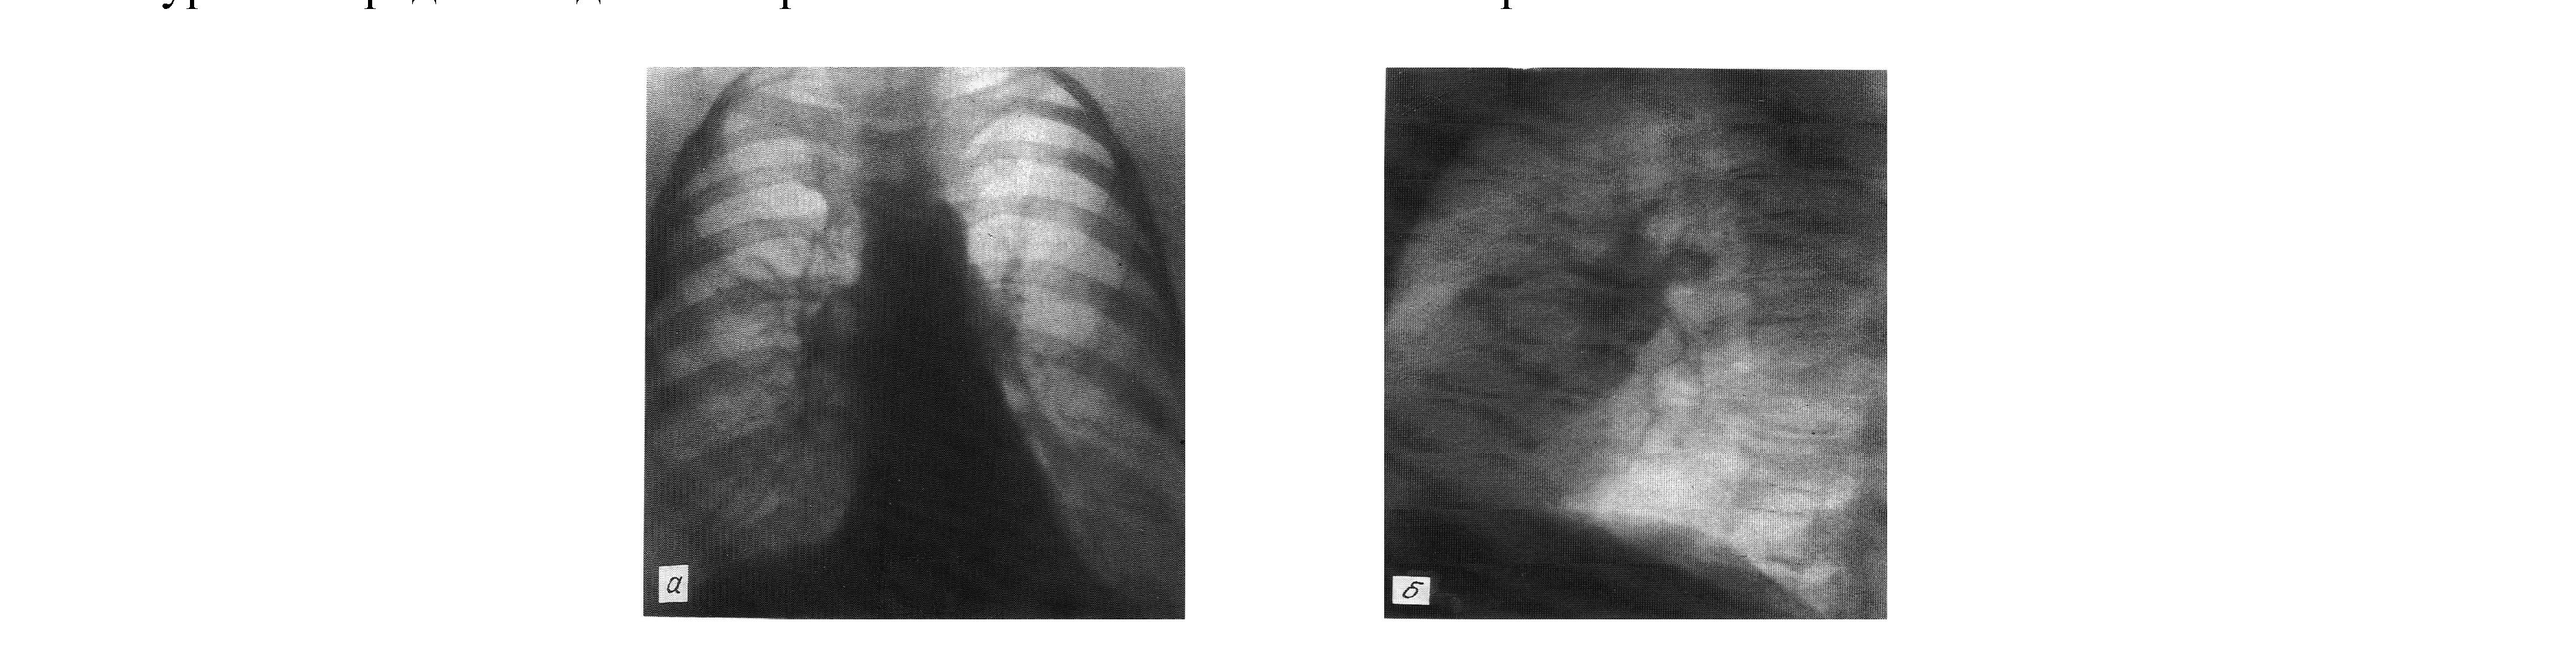 Рентгеноанатомические изменения в легких у больных хроническим обструктивным бронхитом и бронхиальной астмой в период обострения